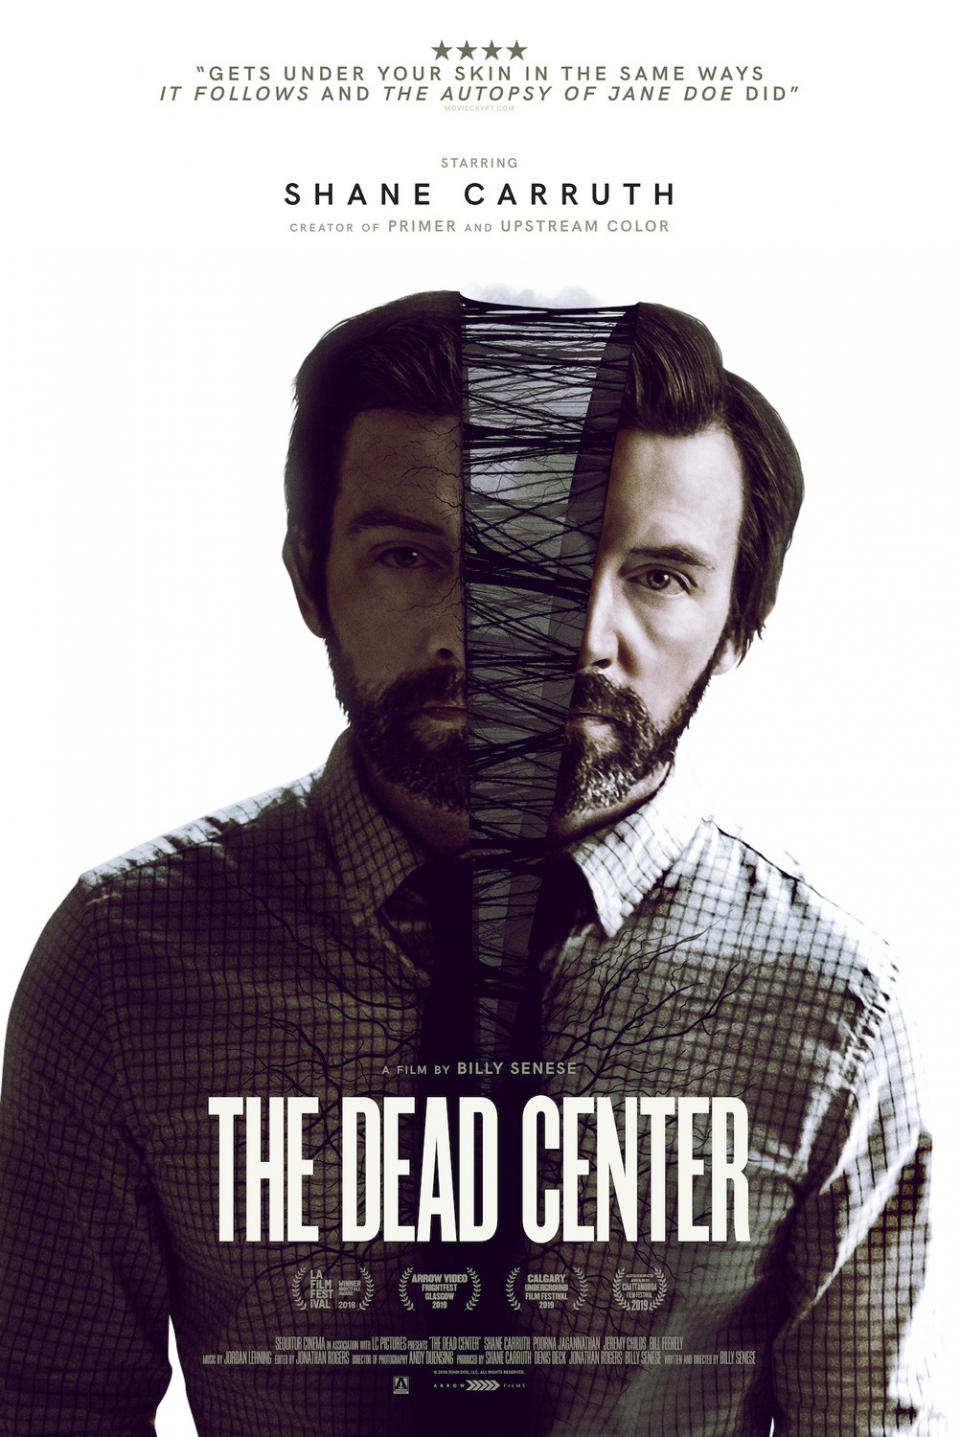 The Dead Center - Teaser Poster